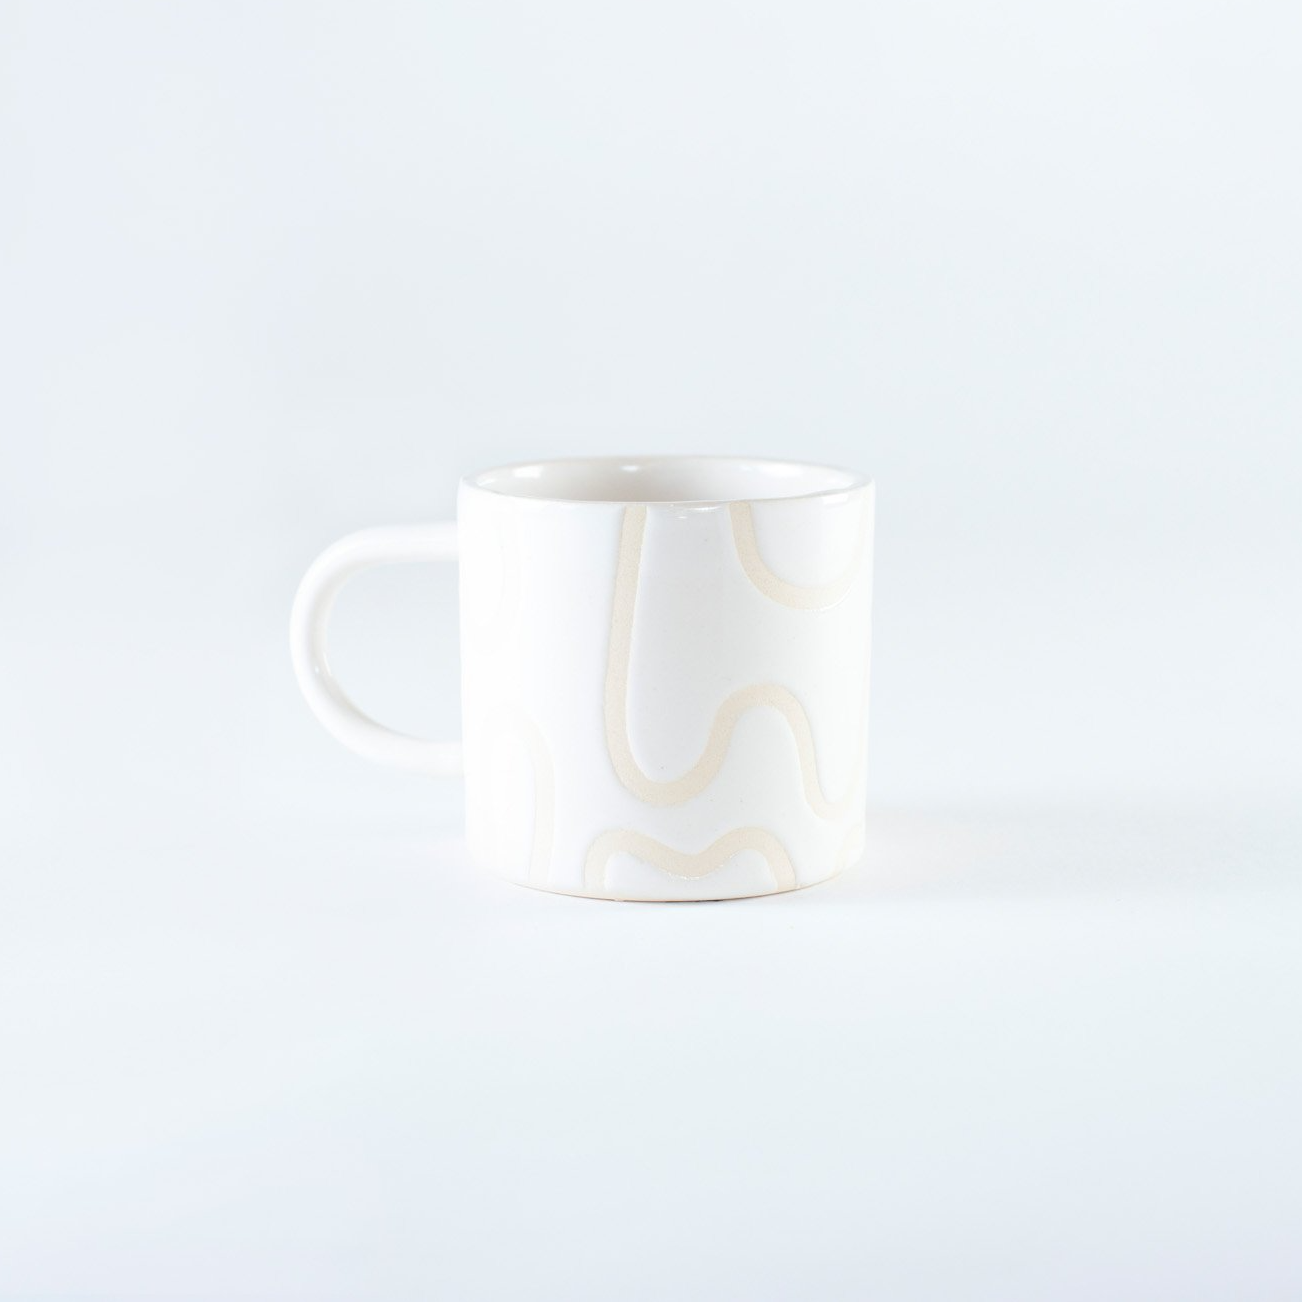 Wiggle Ceramic Coffee Mug